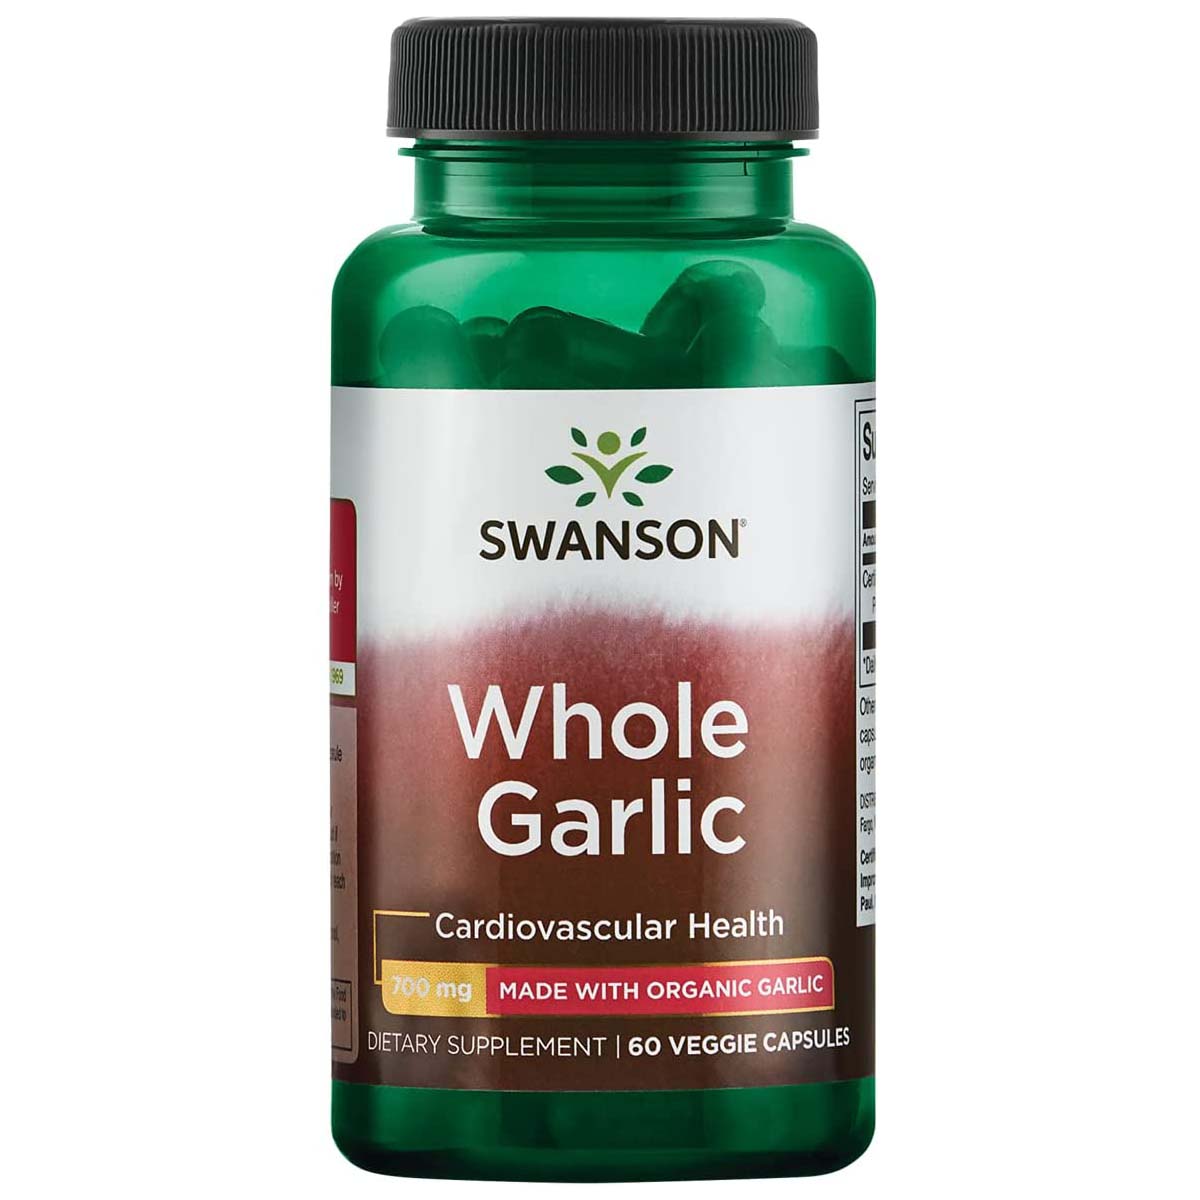 Swanson Whole Garlic 60 Veggie Capsules 700 mg